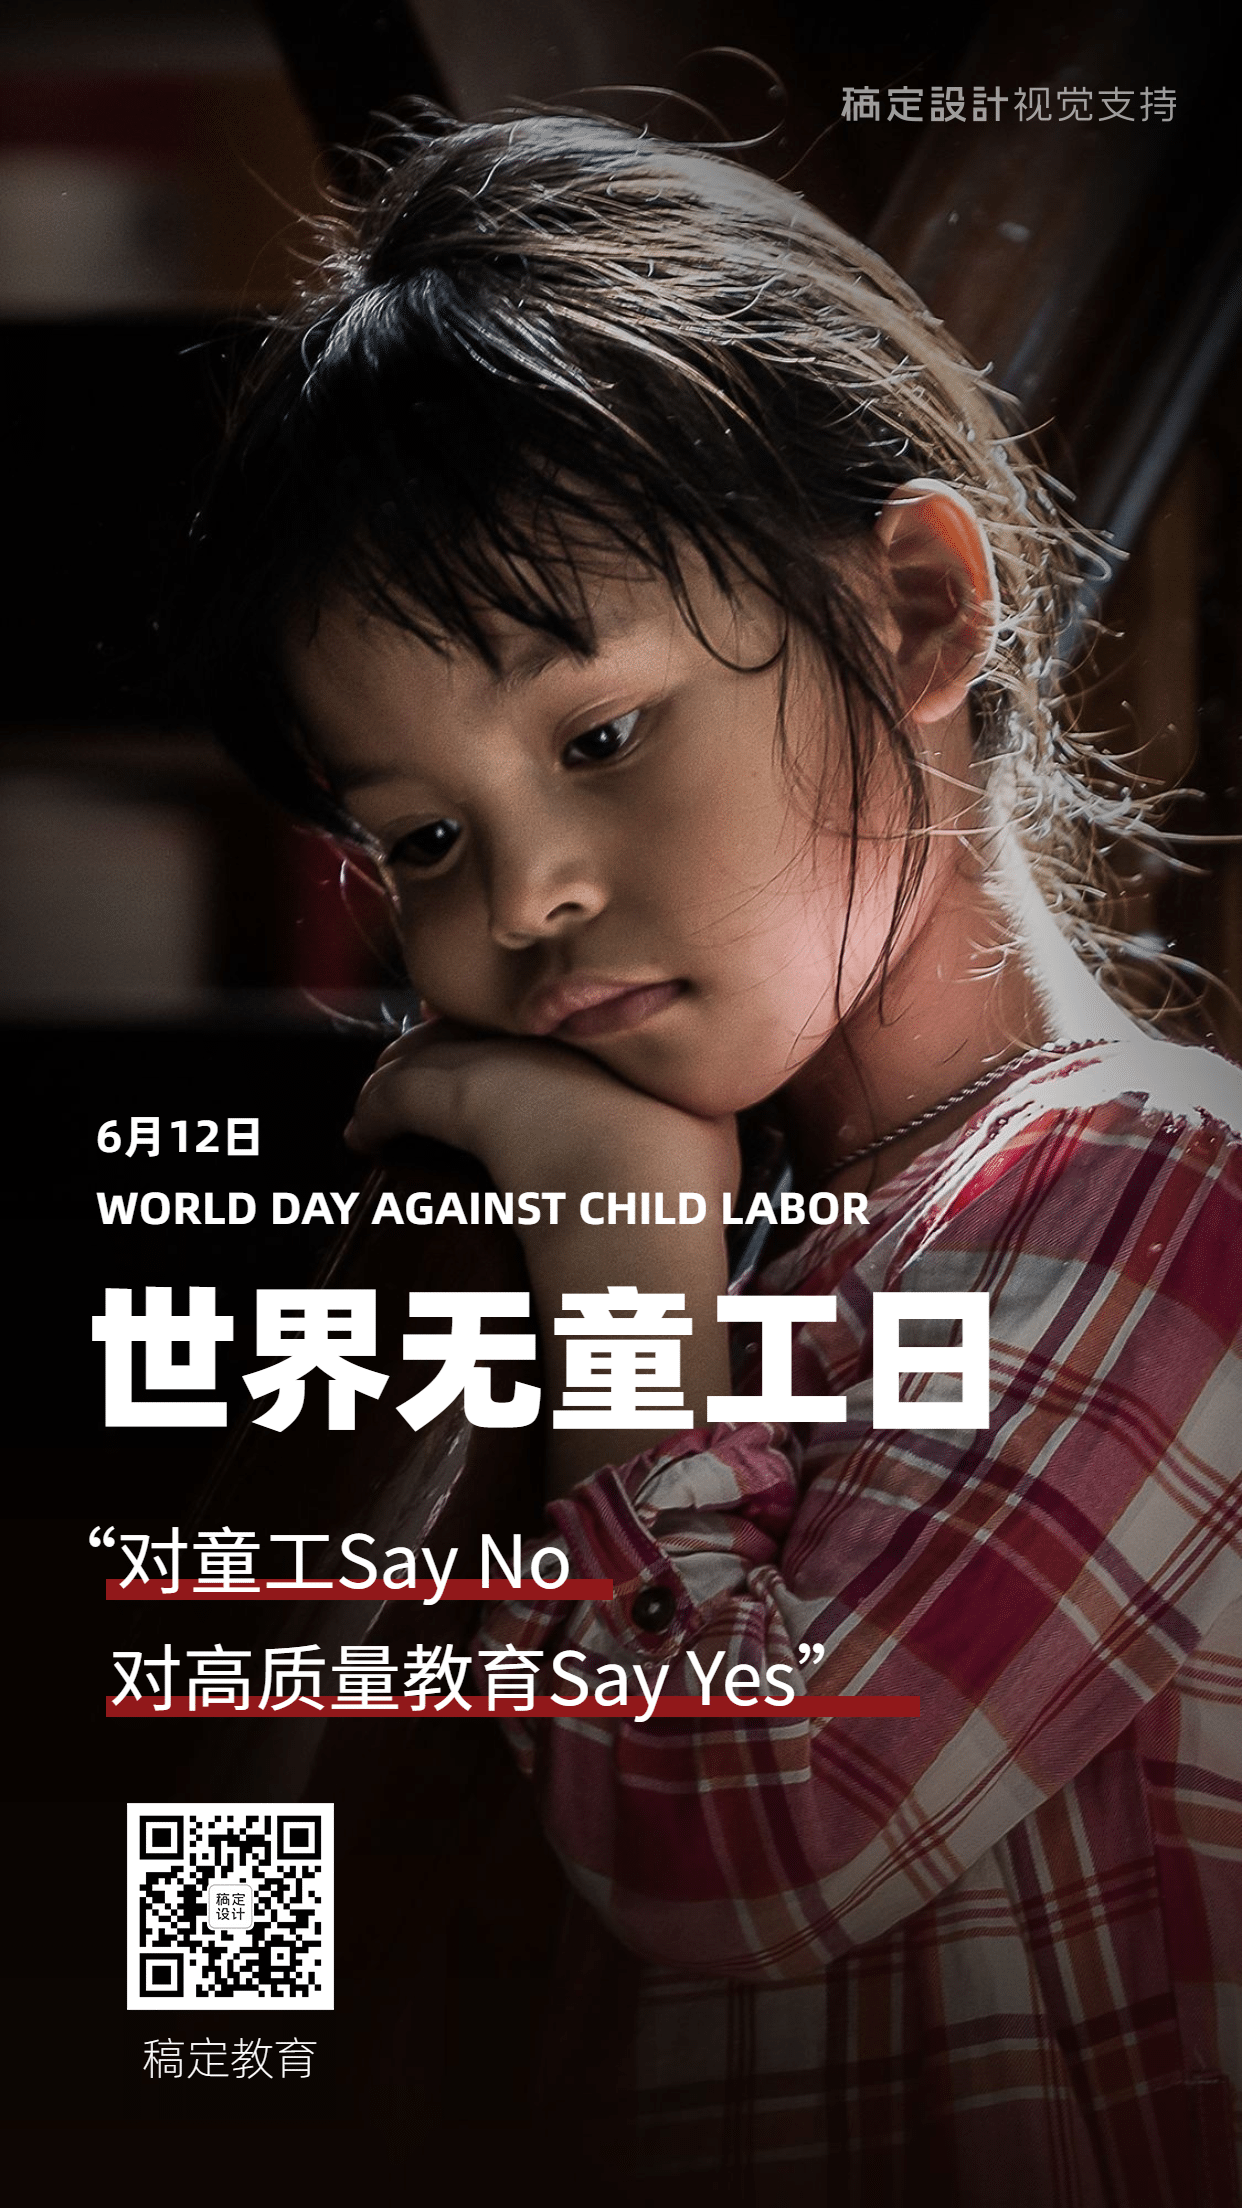 世界无童工日公益宣传实景手机海报预览效果